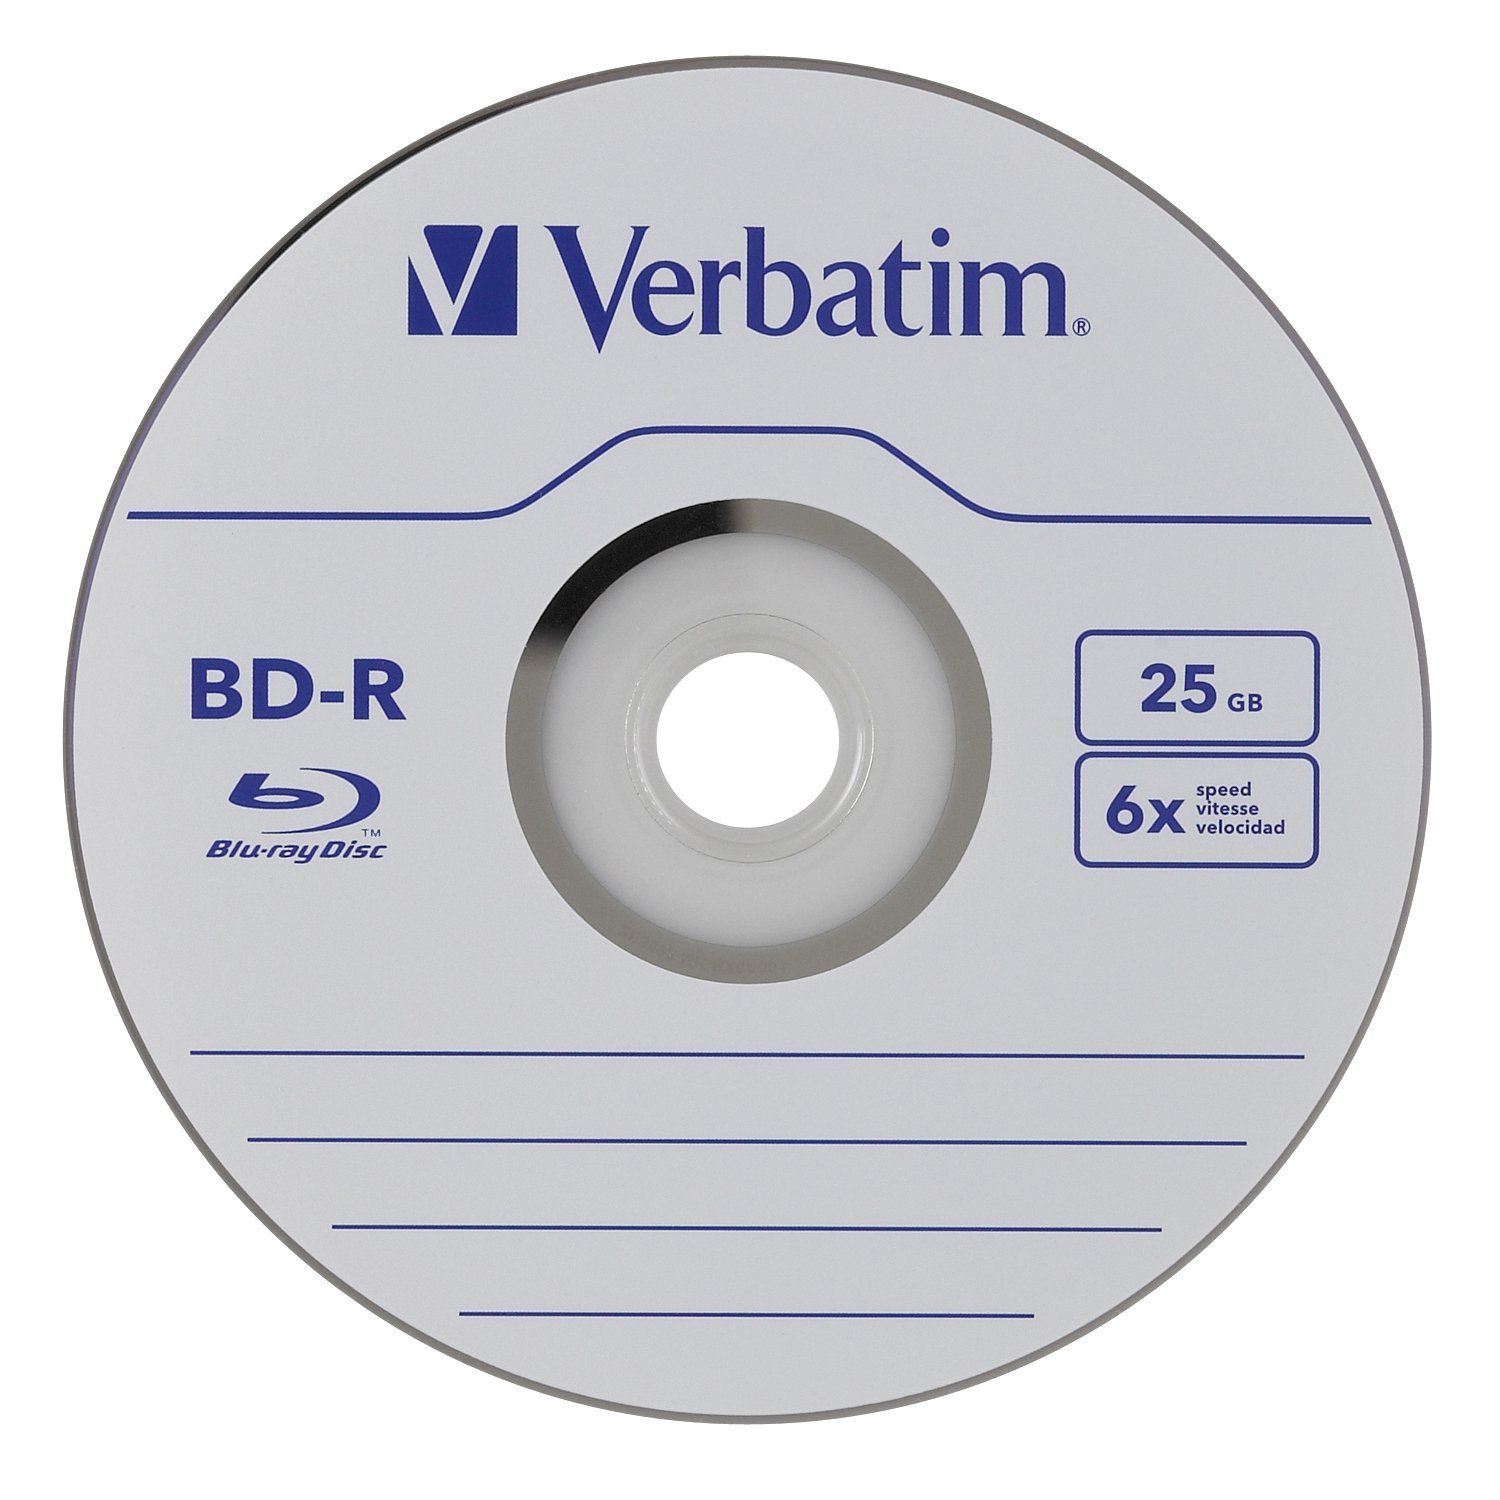 Verbatim Datalife 6x BD-R 25 GB 50 pc(s)_2